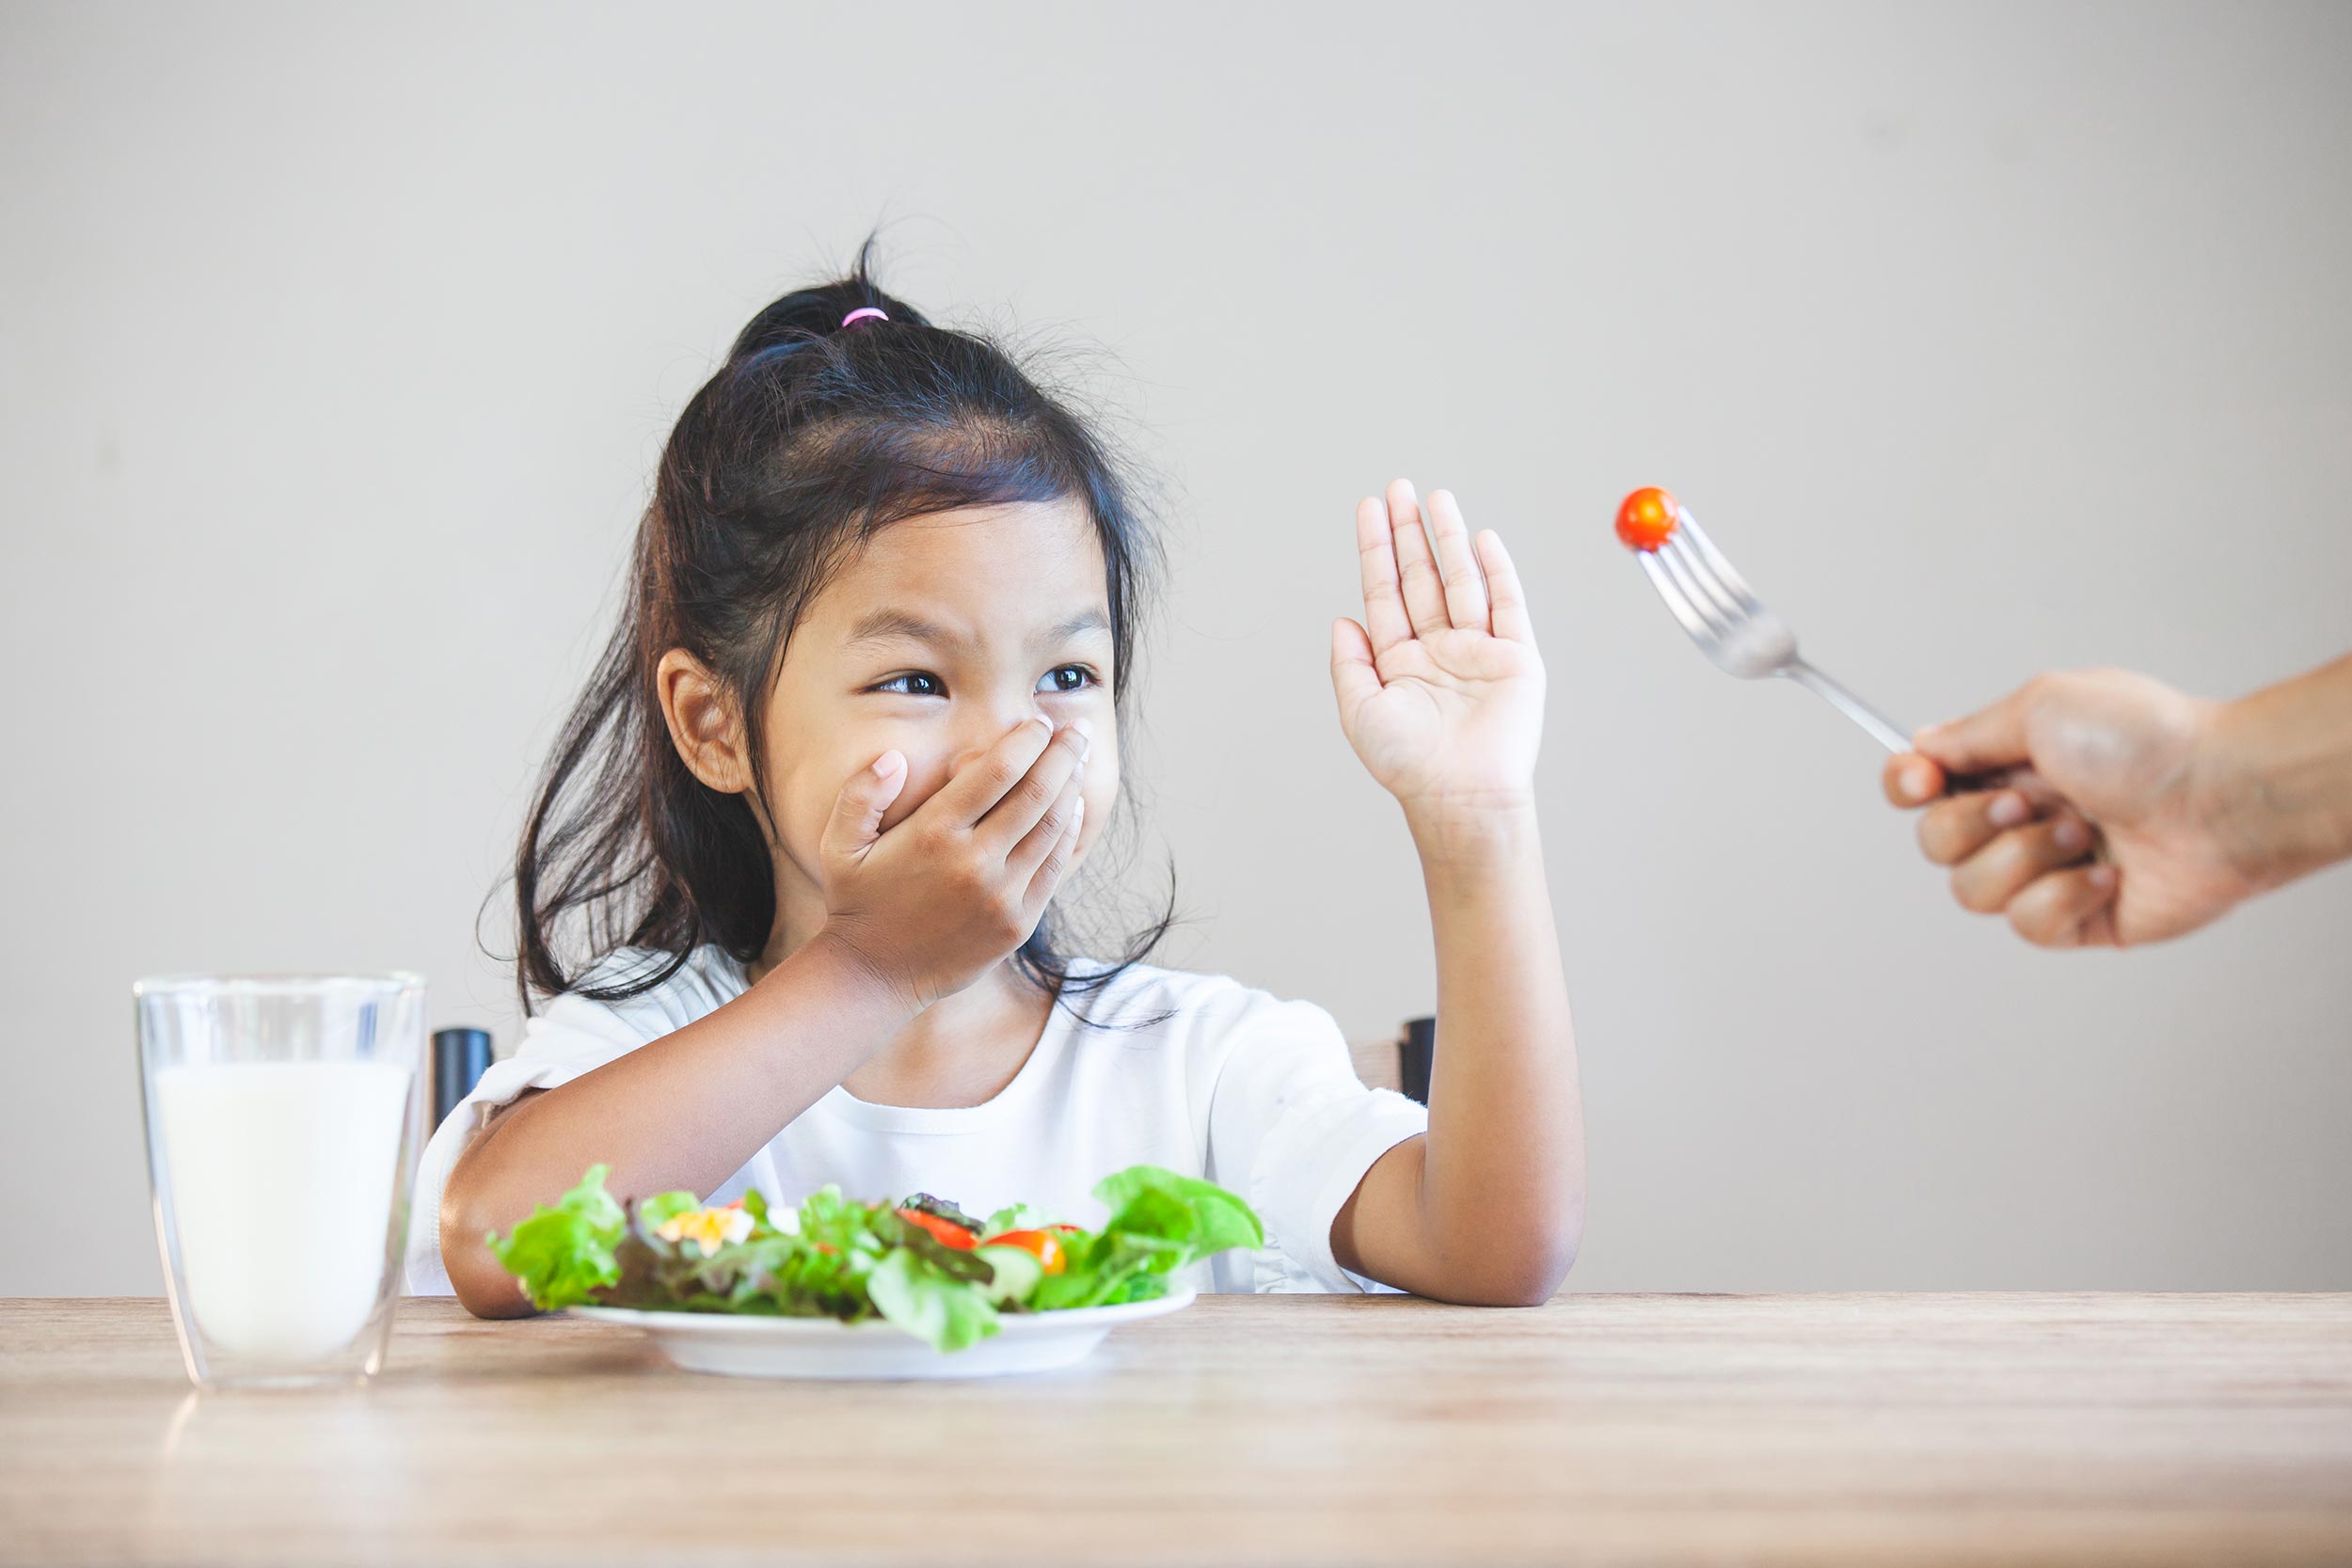 Cara mengatasi anak susah makan sayur bukanlah dengan dipaksa